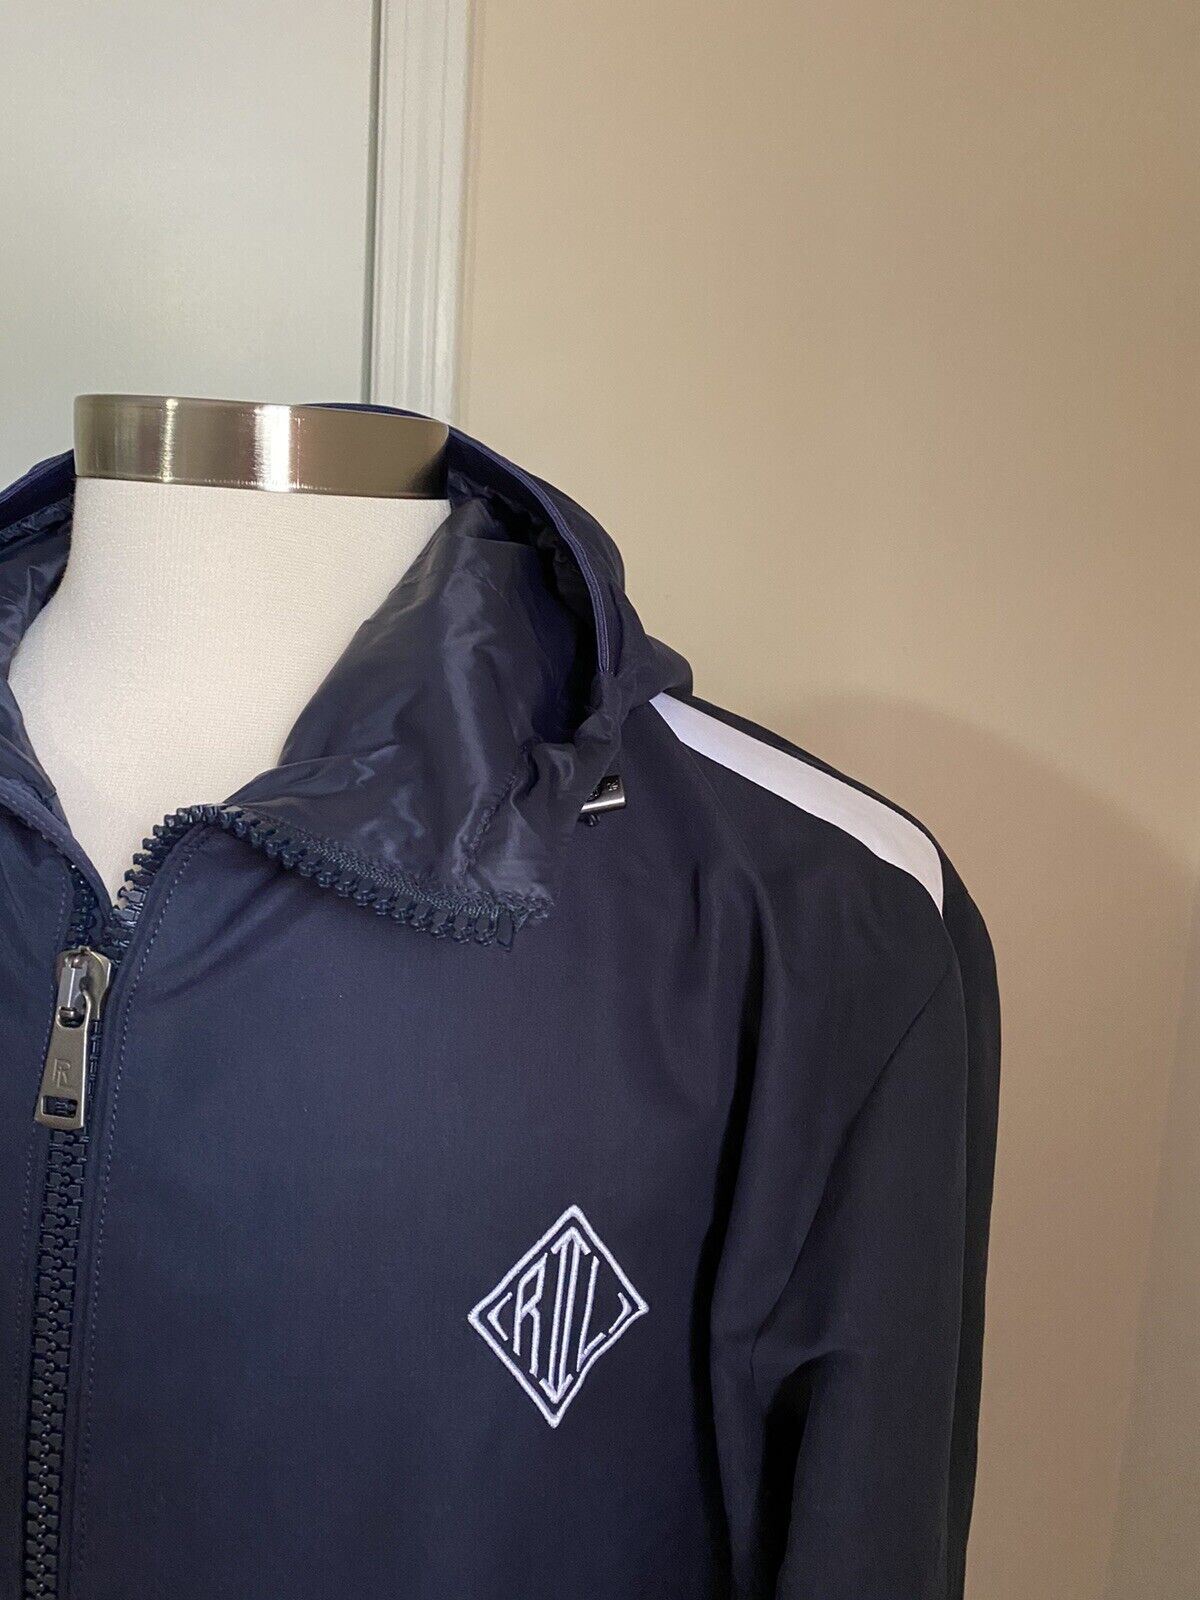 Новая мужская спортивная куртка темно-синего цвета от Ralph Lauren Purple Label, размер M, $895